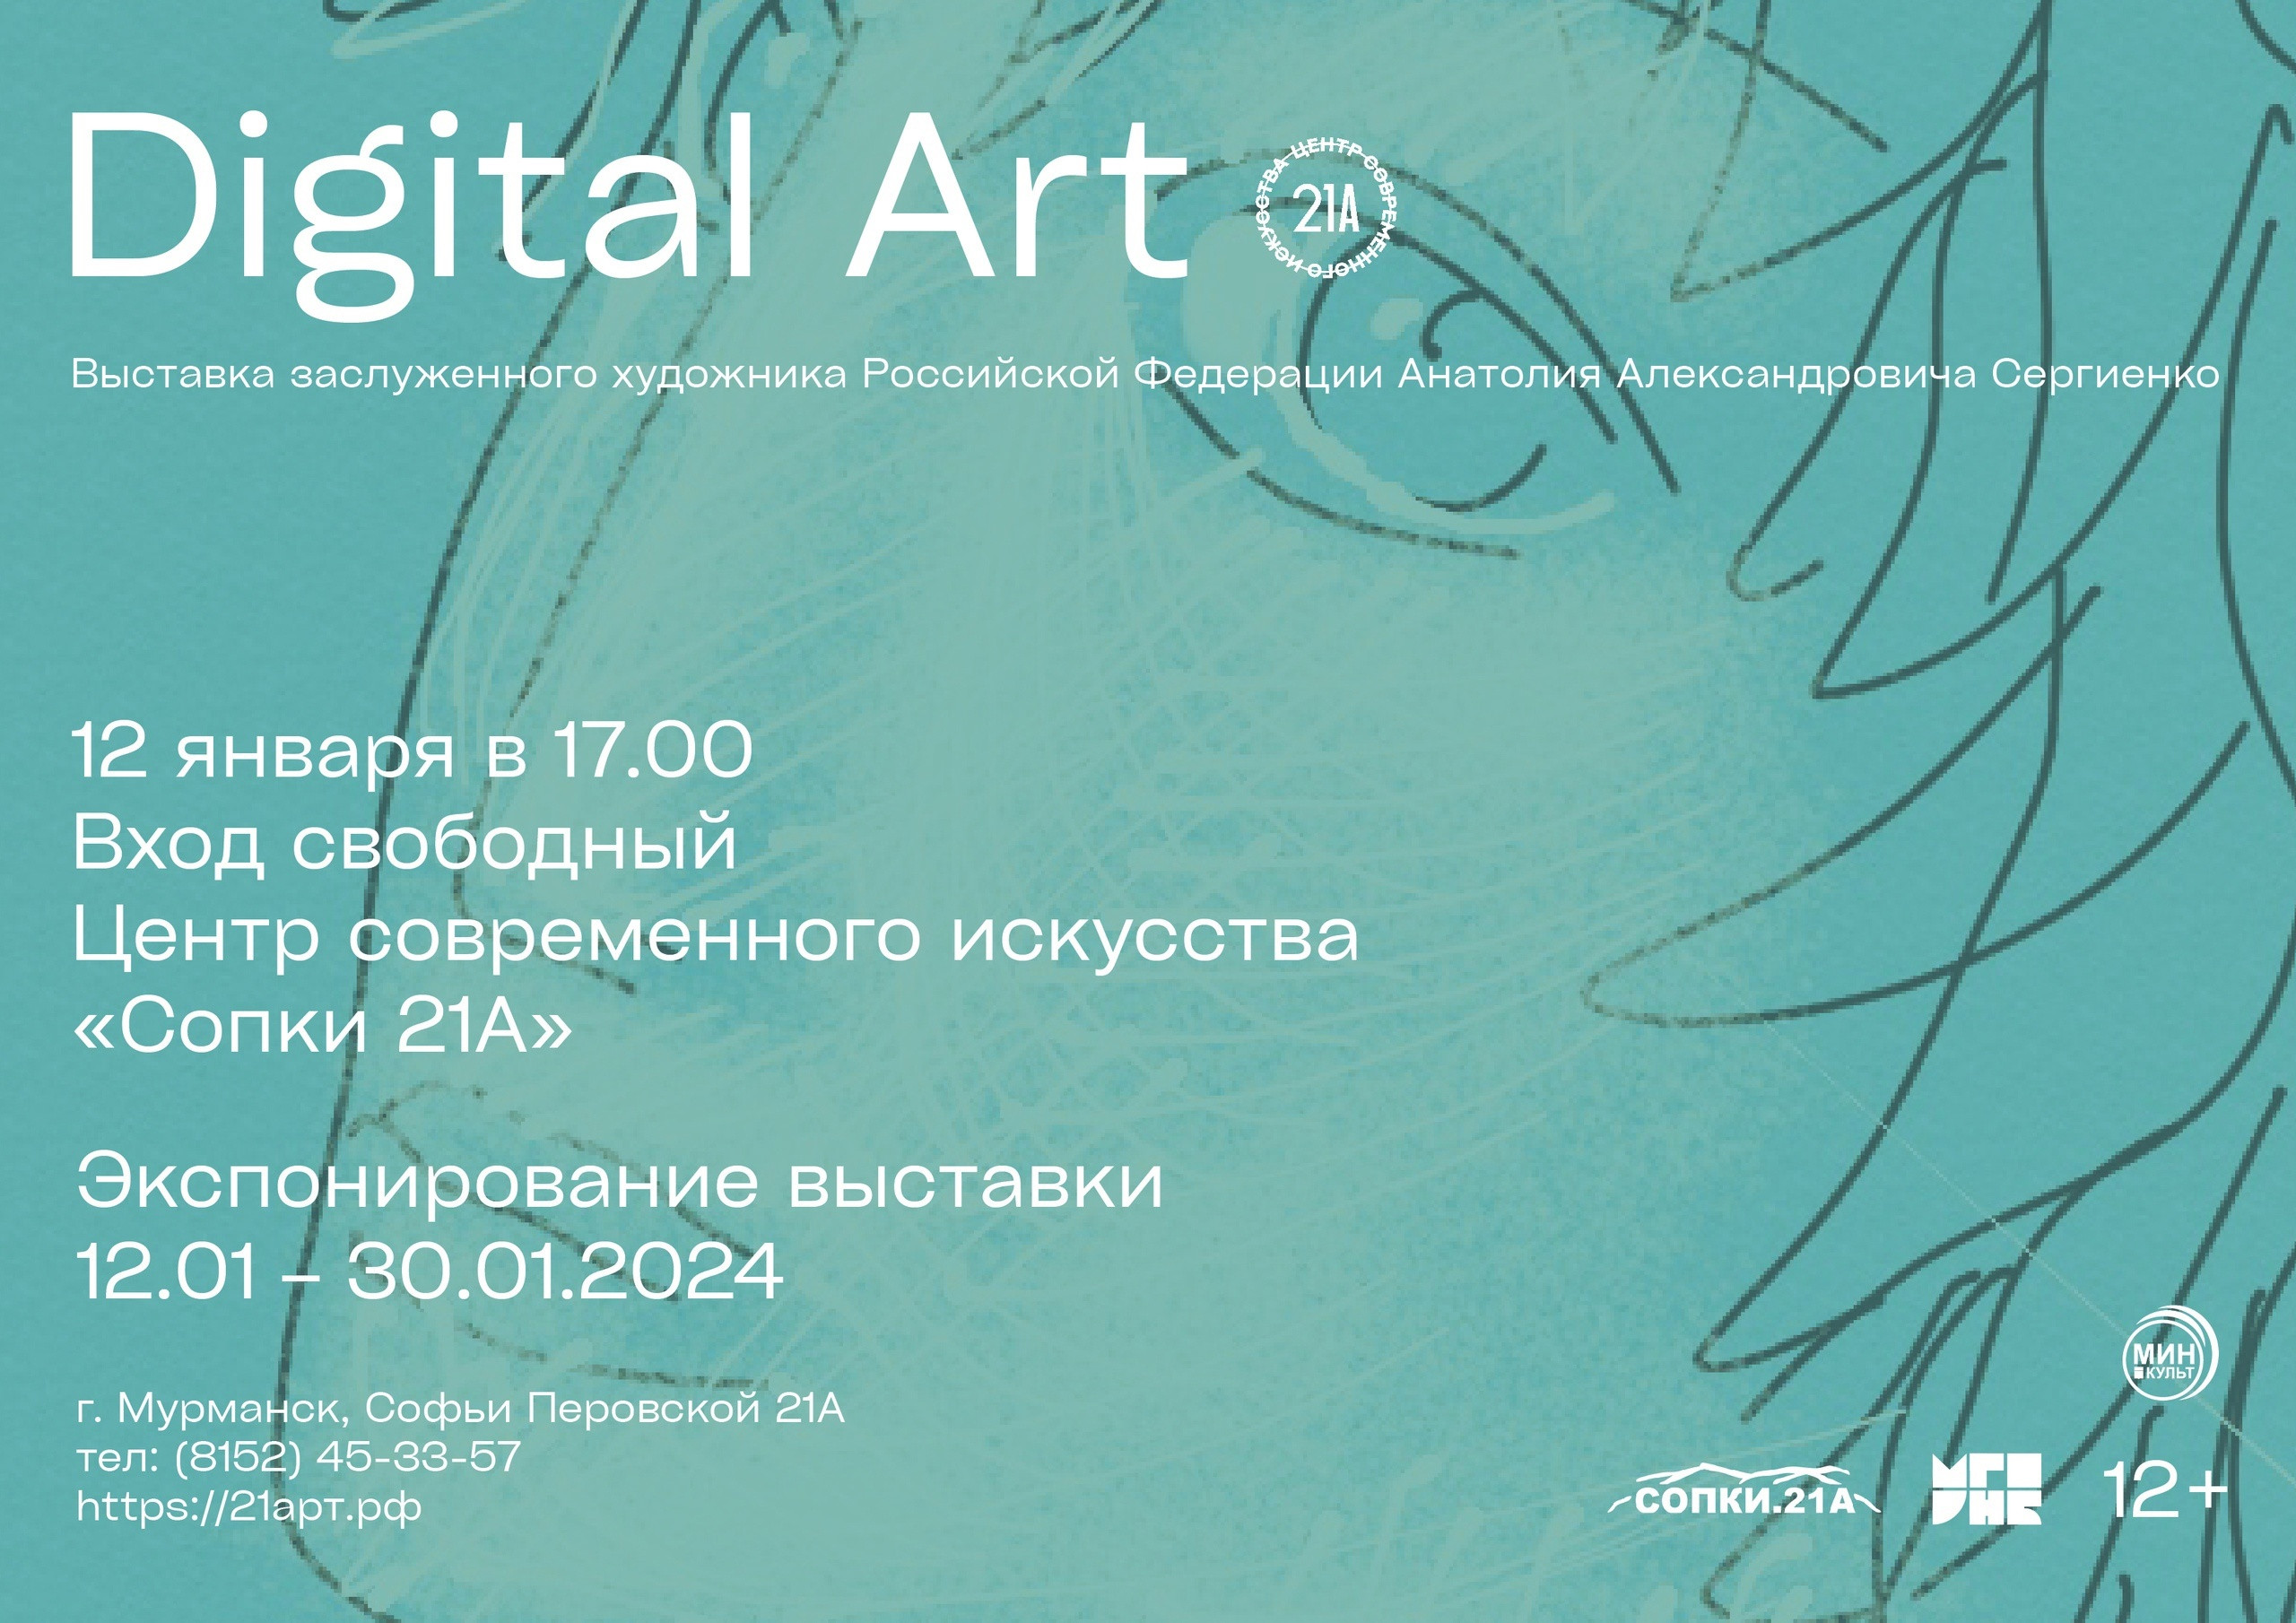 В Мурманске откроется выставка «Digital Art» Анатолия Сергиенко